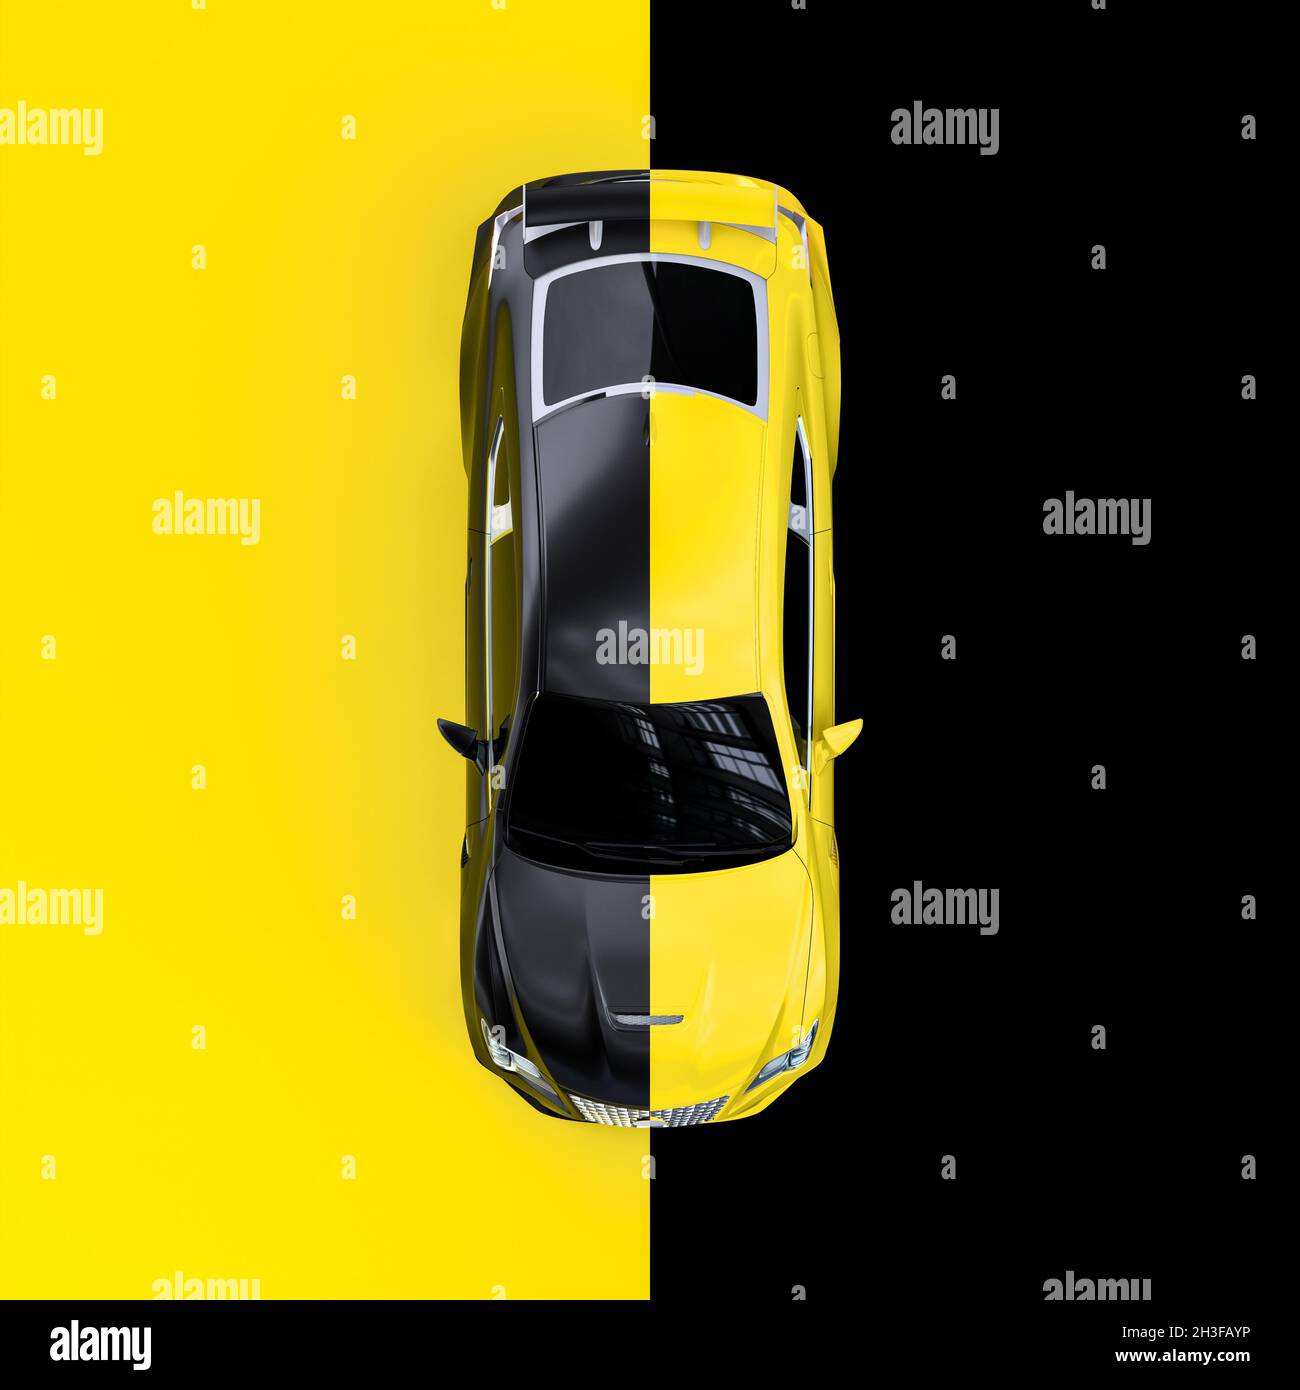 vettura sportiva gialla vista dall'alto, colore alternato nero e giallo. rendering 3d Foto Stock